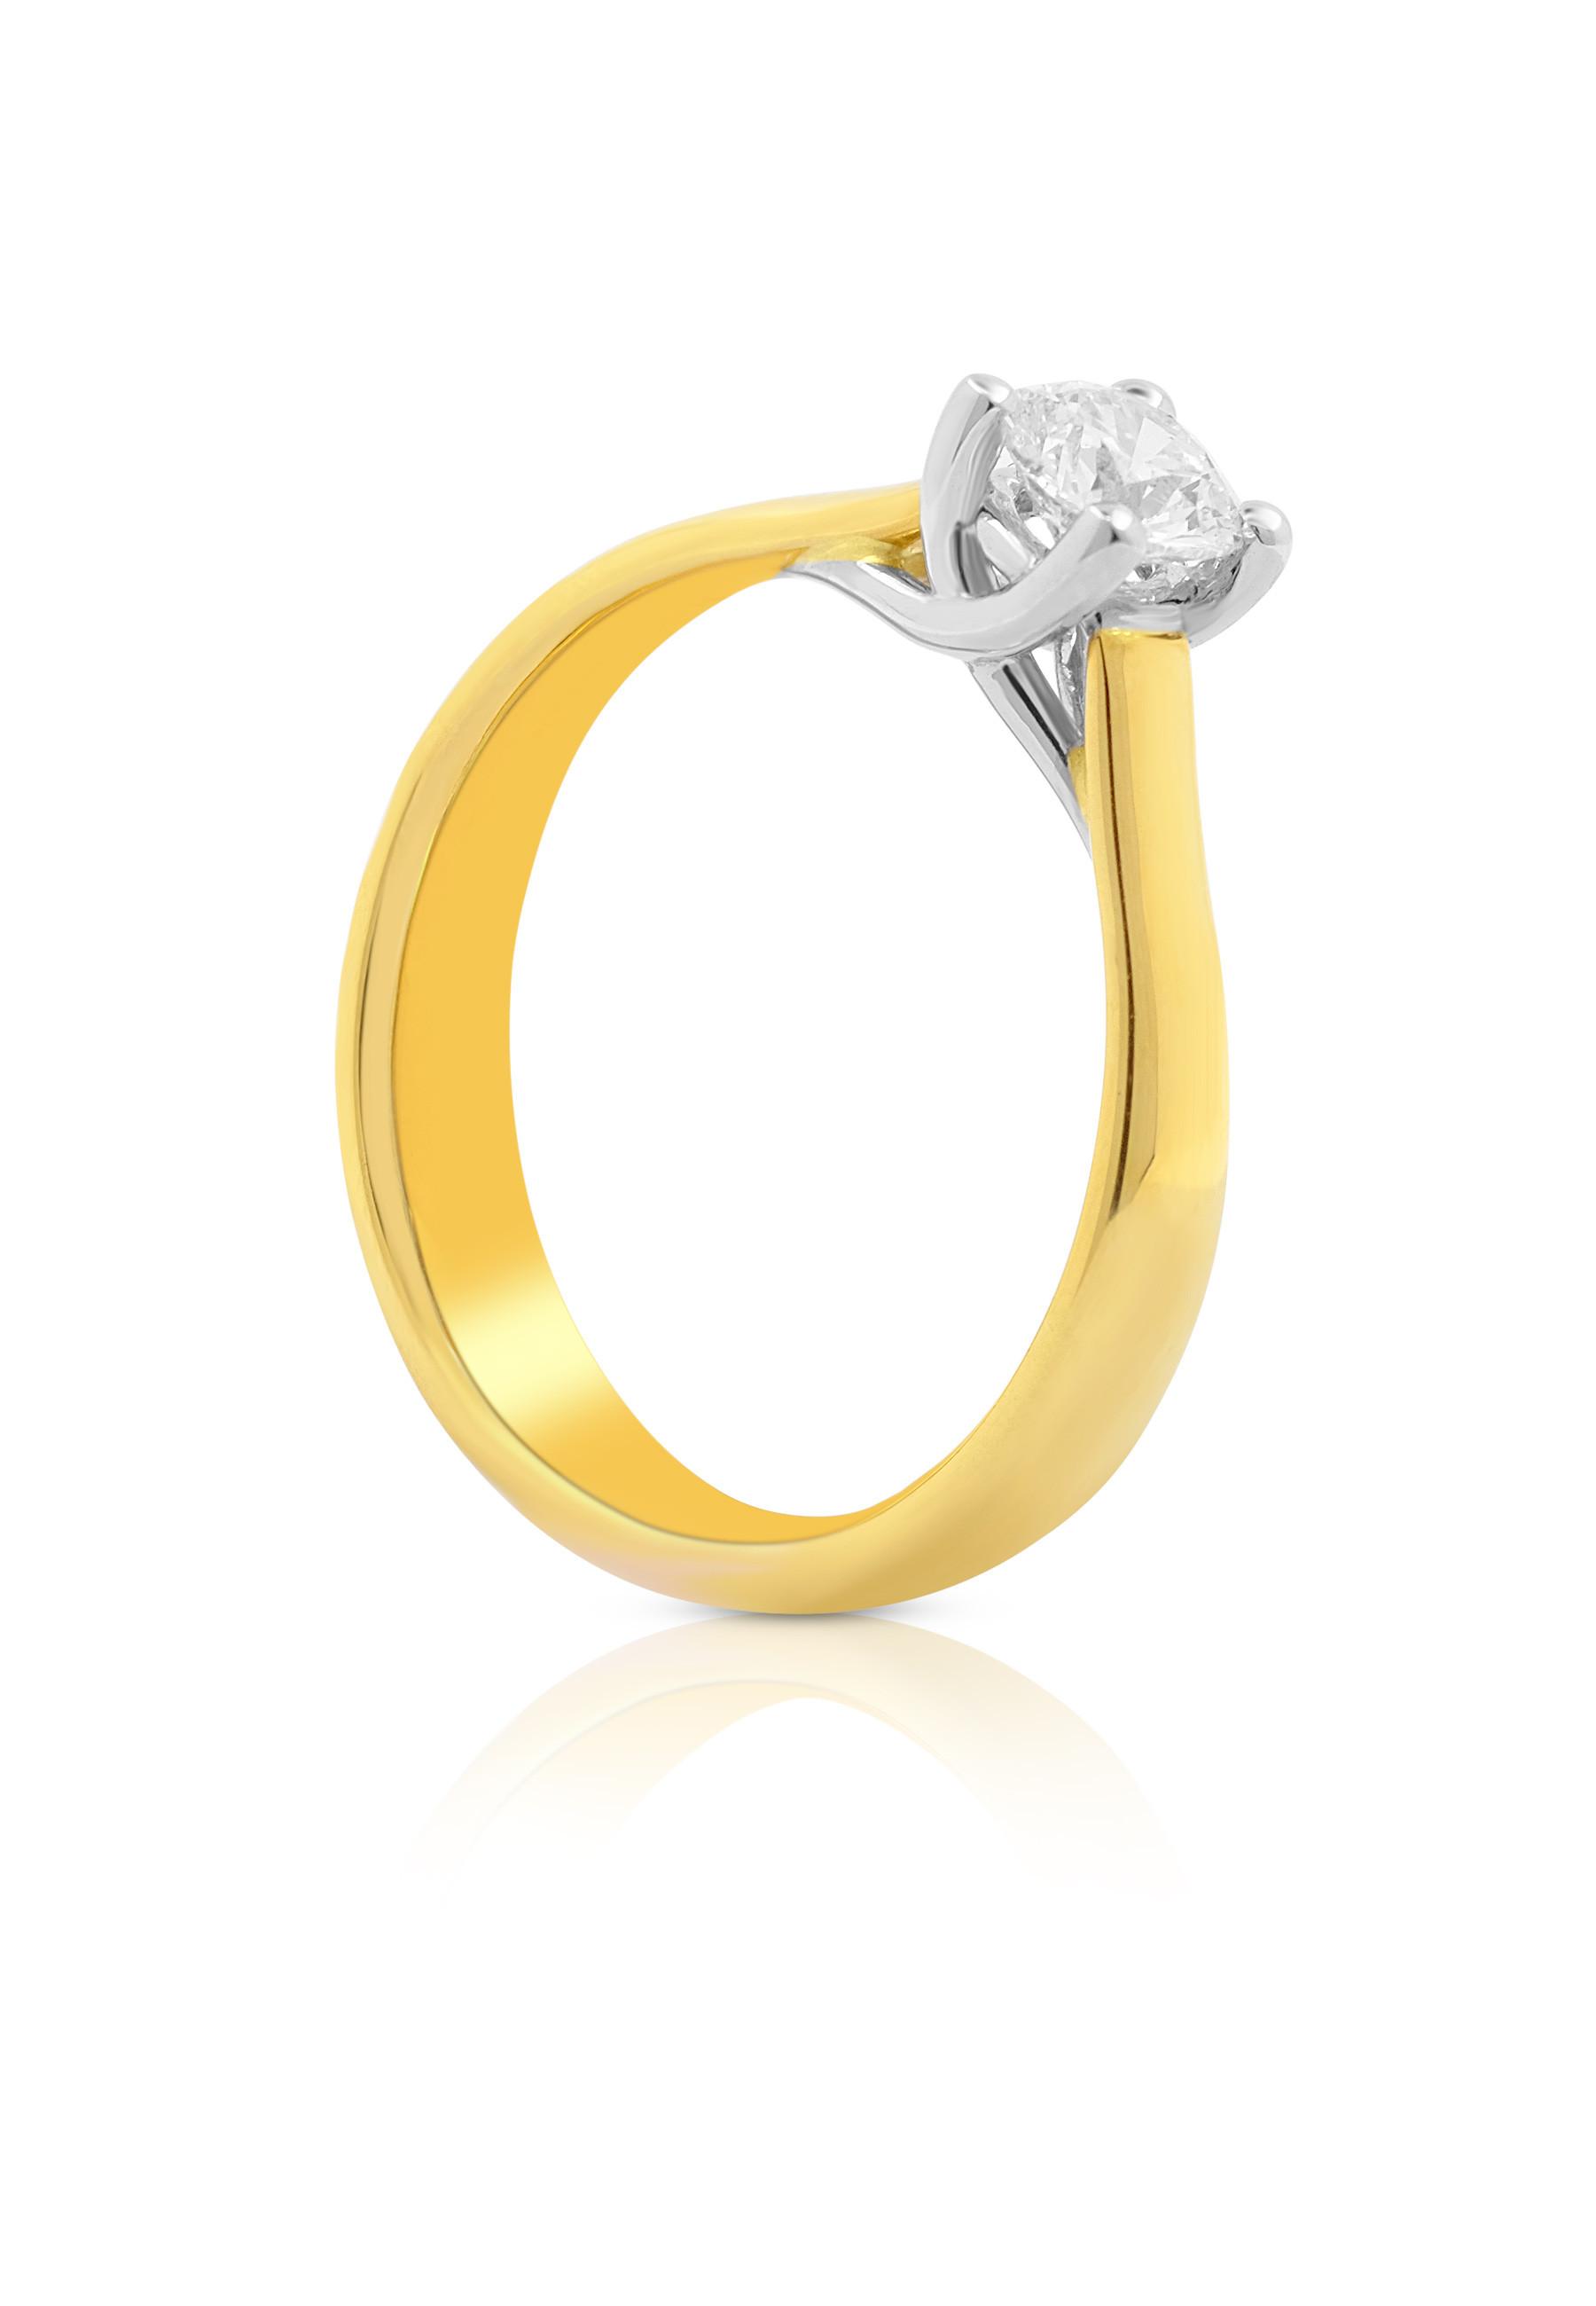 MUAU Schmuck  Solitaire Ring Diamant 0.25 ct Gold 750 